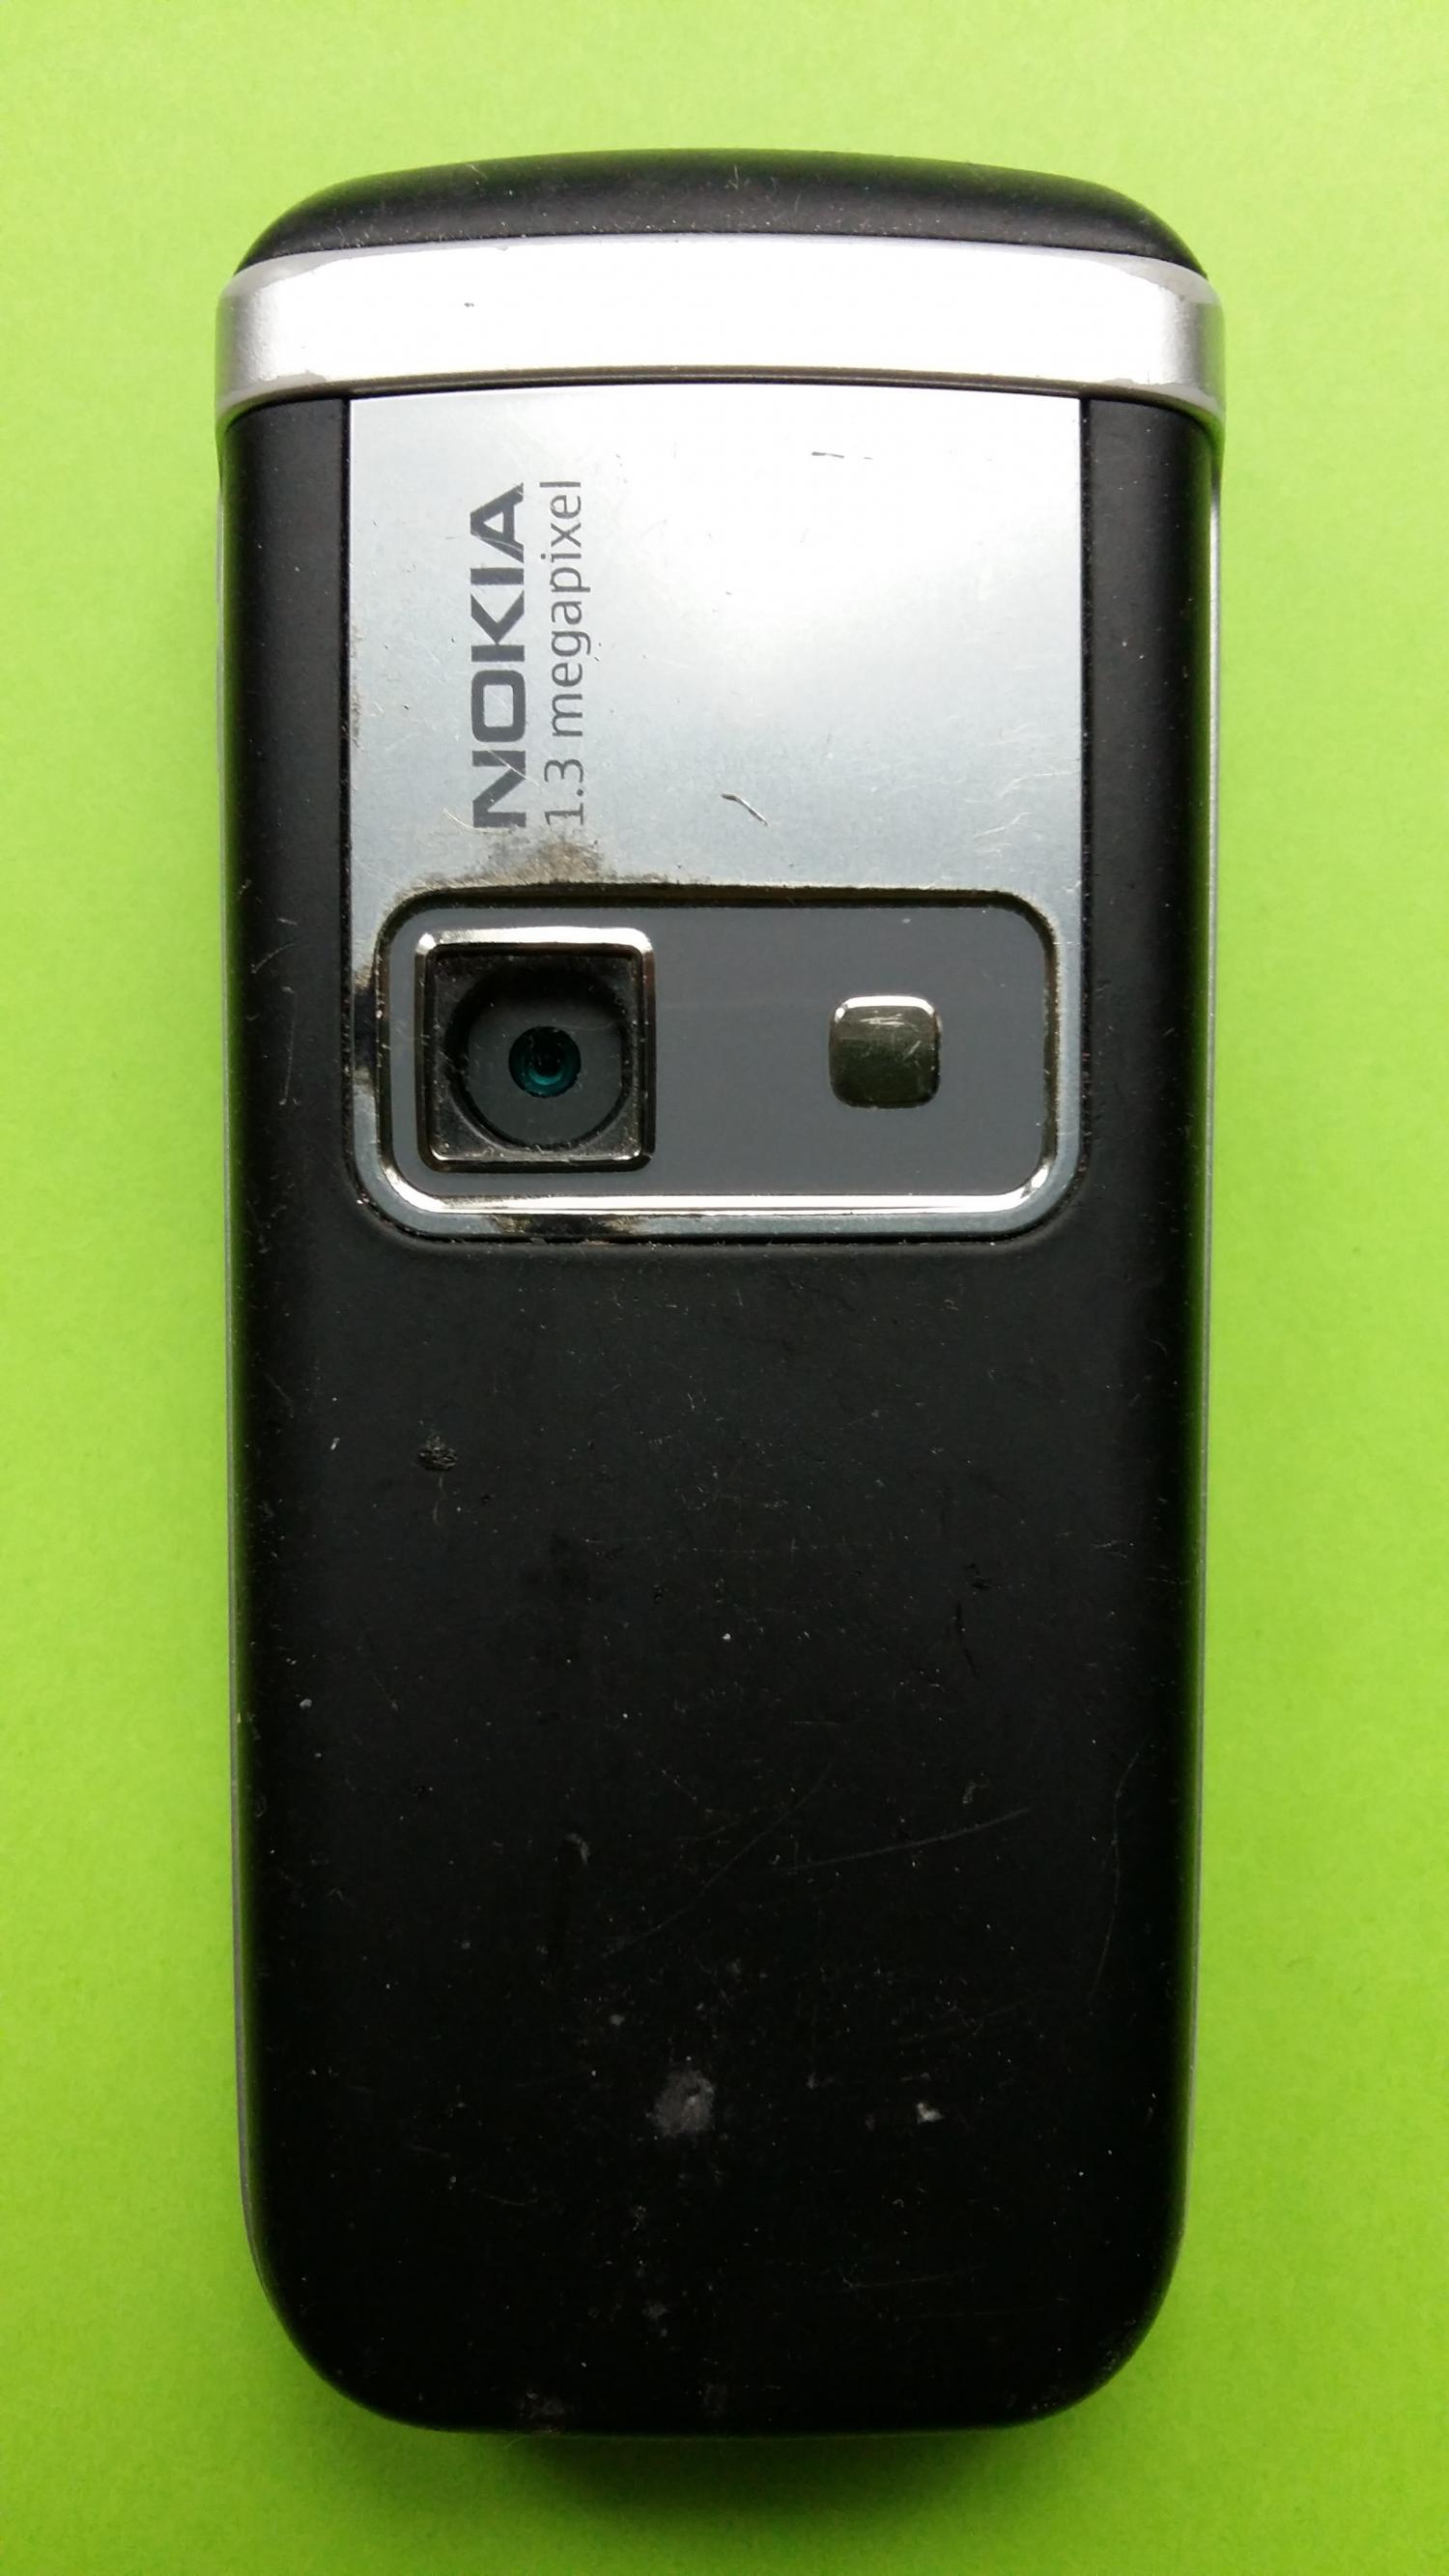 image-7325262-Nokia 6151 (1)2.jpg